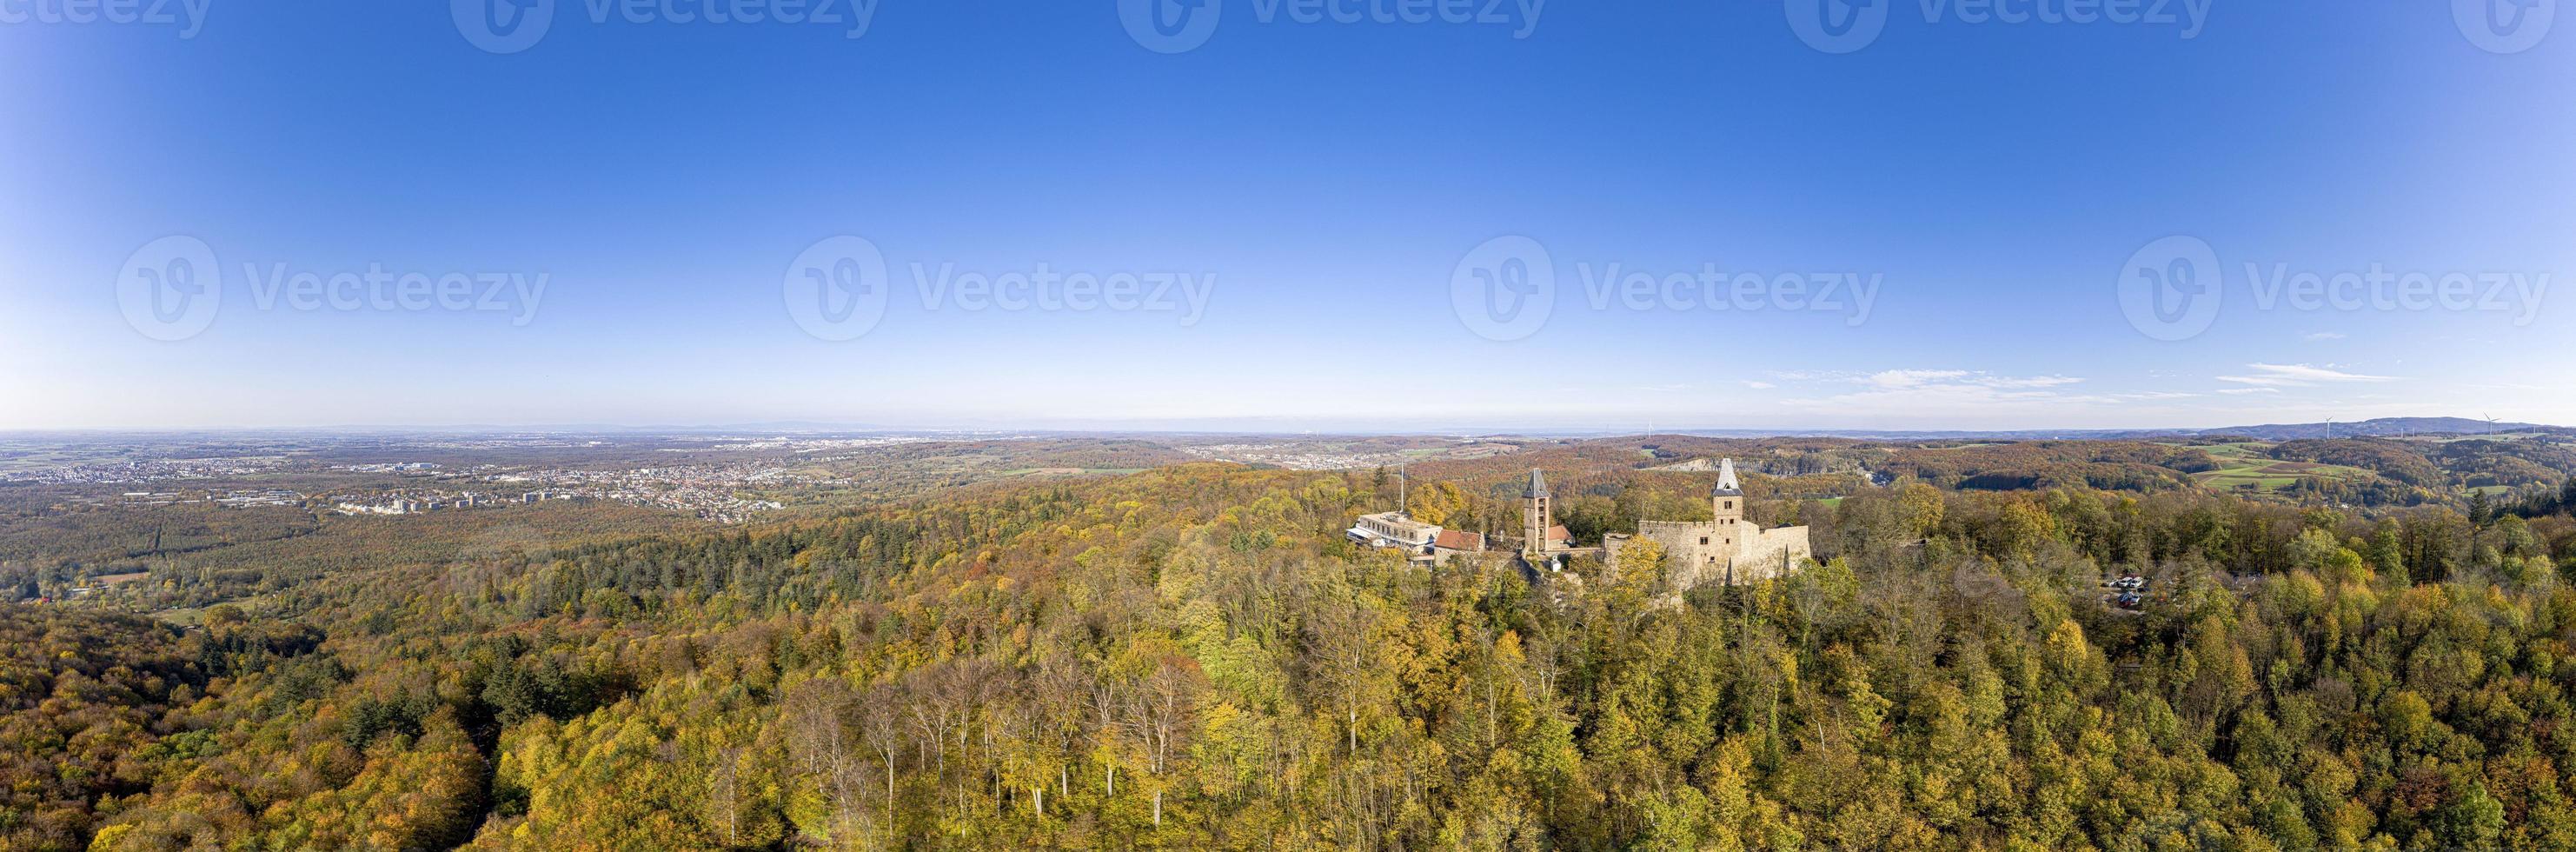 foto de drones del castillo de frankenstein cerca de darmstadt en alemania con vistas a la zona del Rin-Meno en otoño